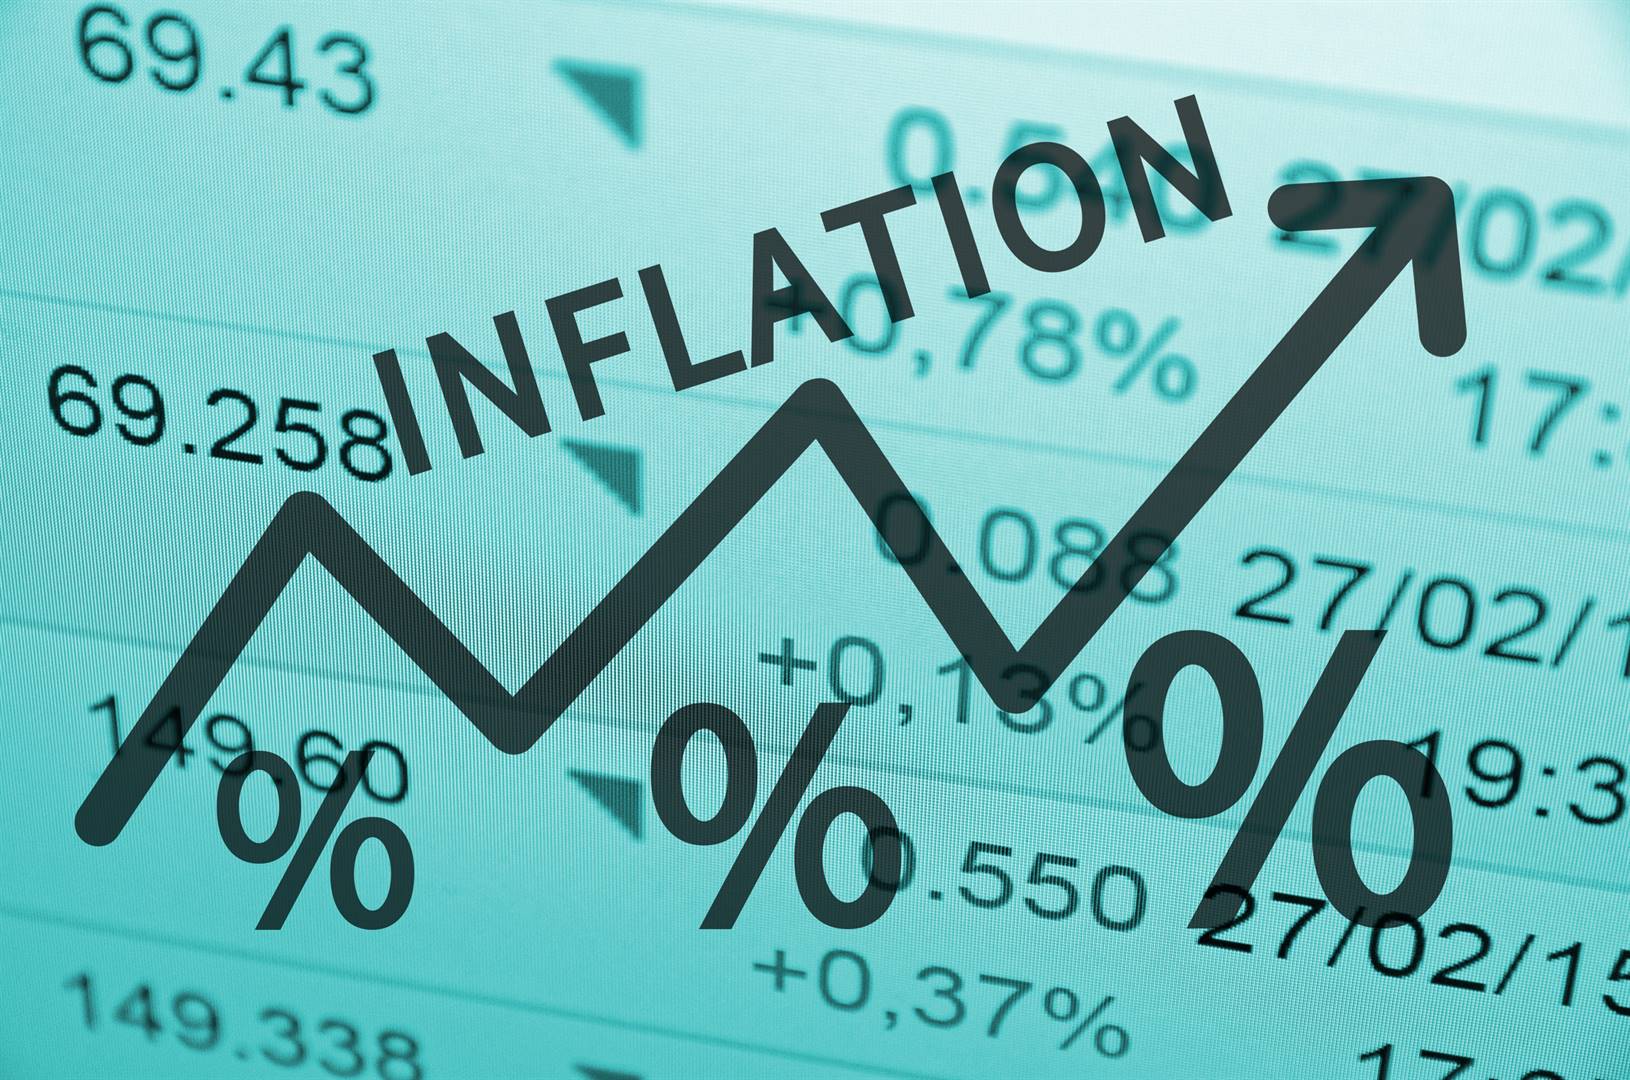 Risultato immagini per inflation